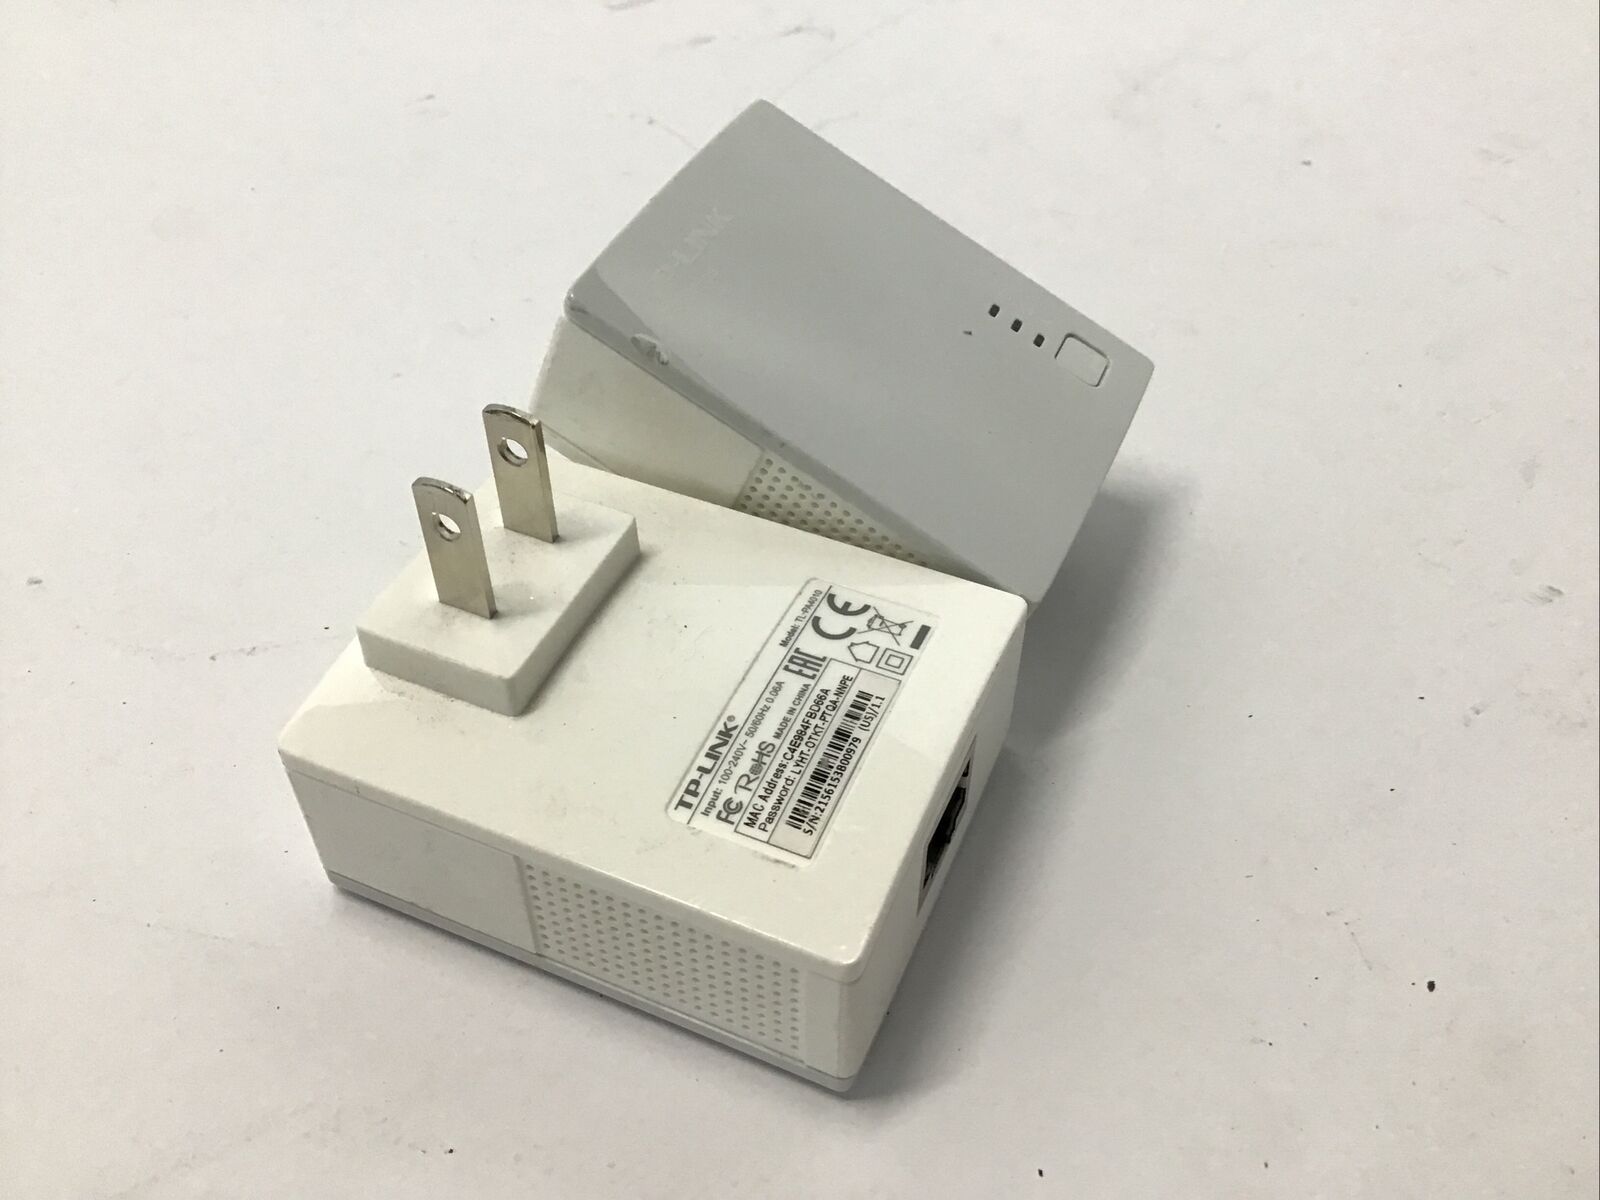 TP-Link TL-PA4010 AV500 Nano Powerline Ethernet Adapter Starter Pair